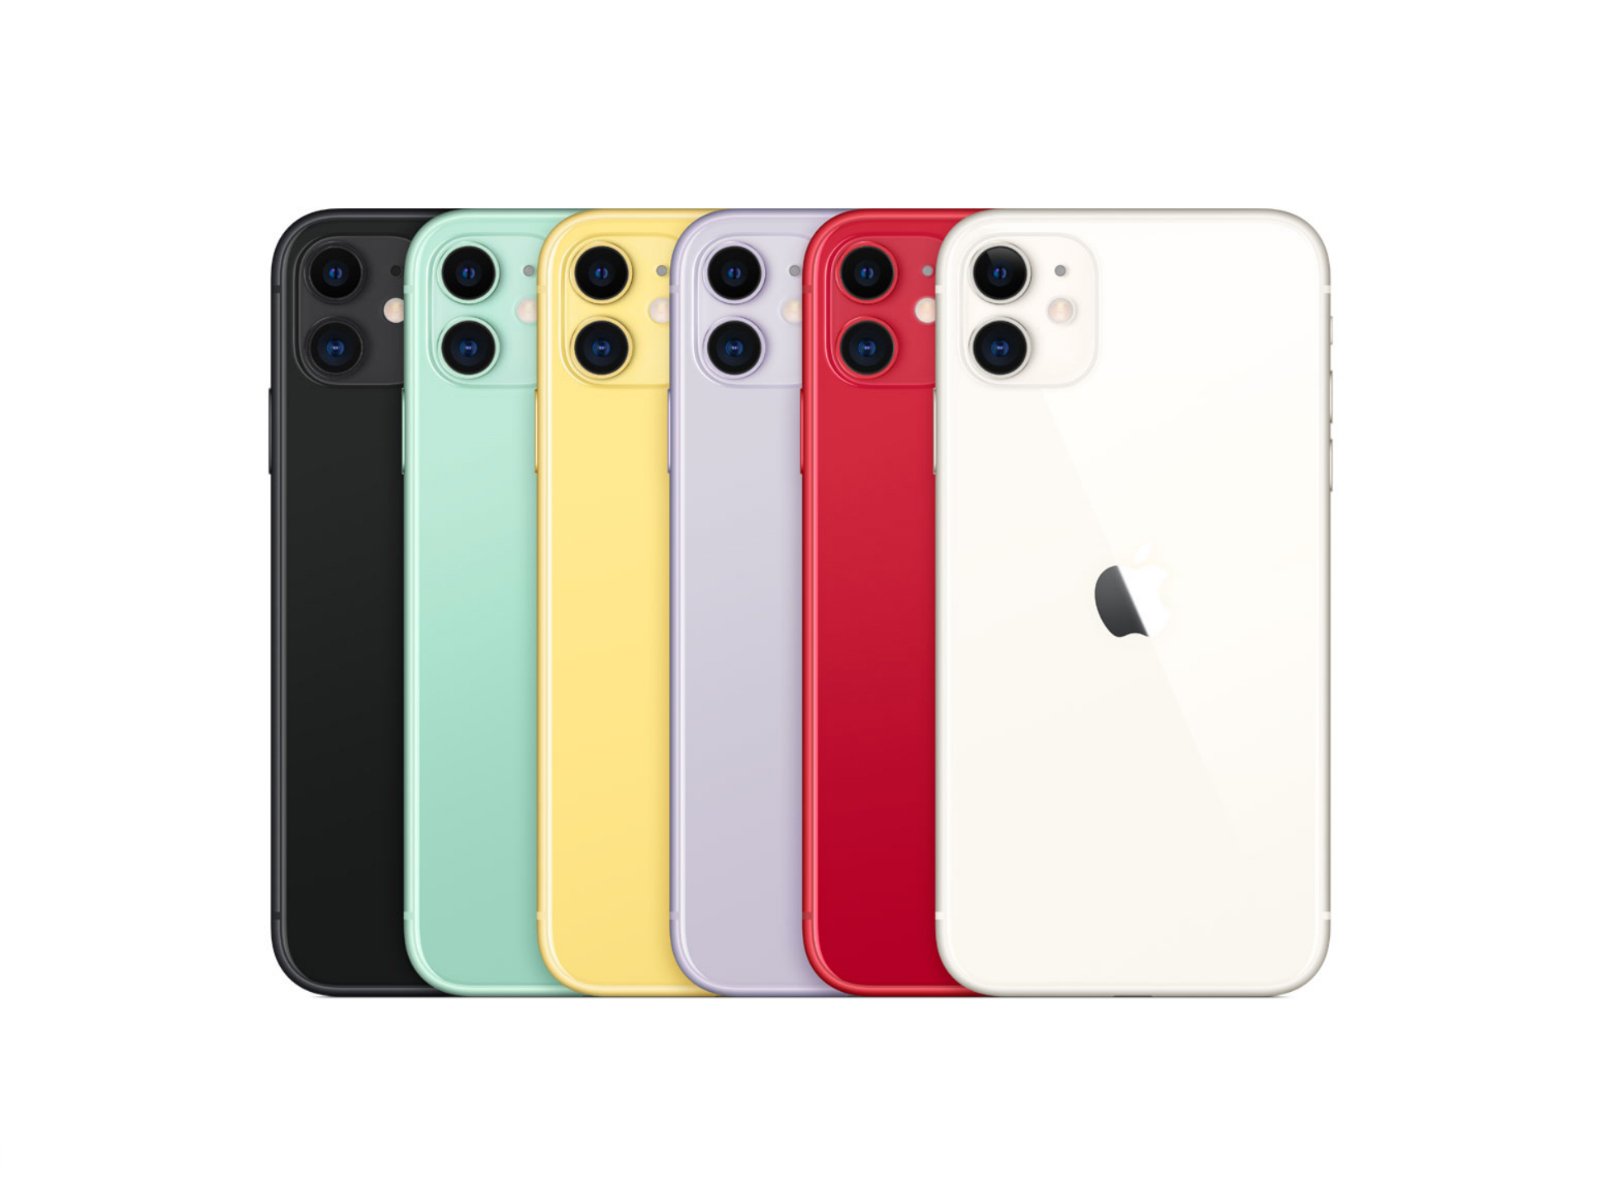 Iphone New Model 2019 Price